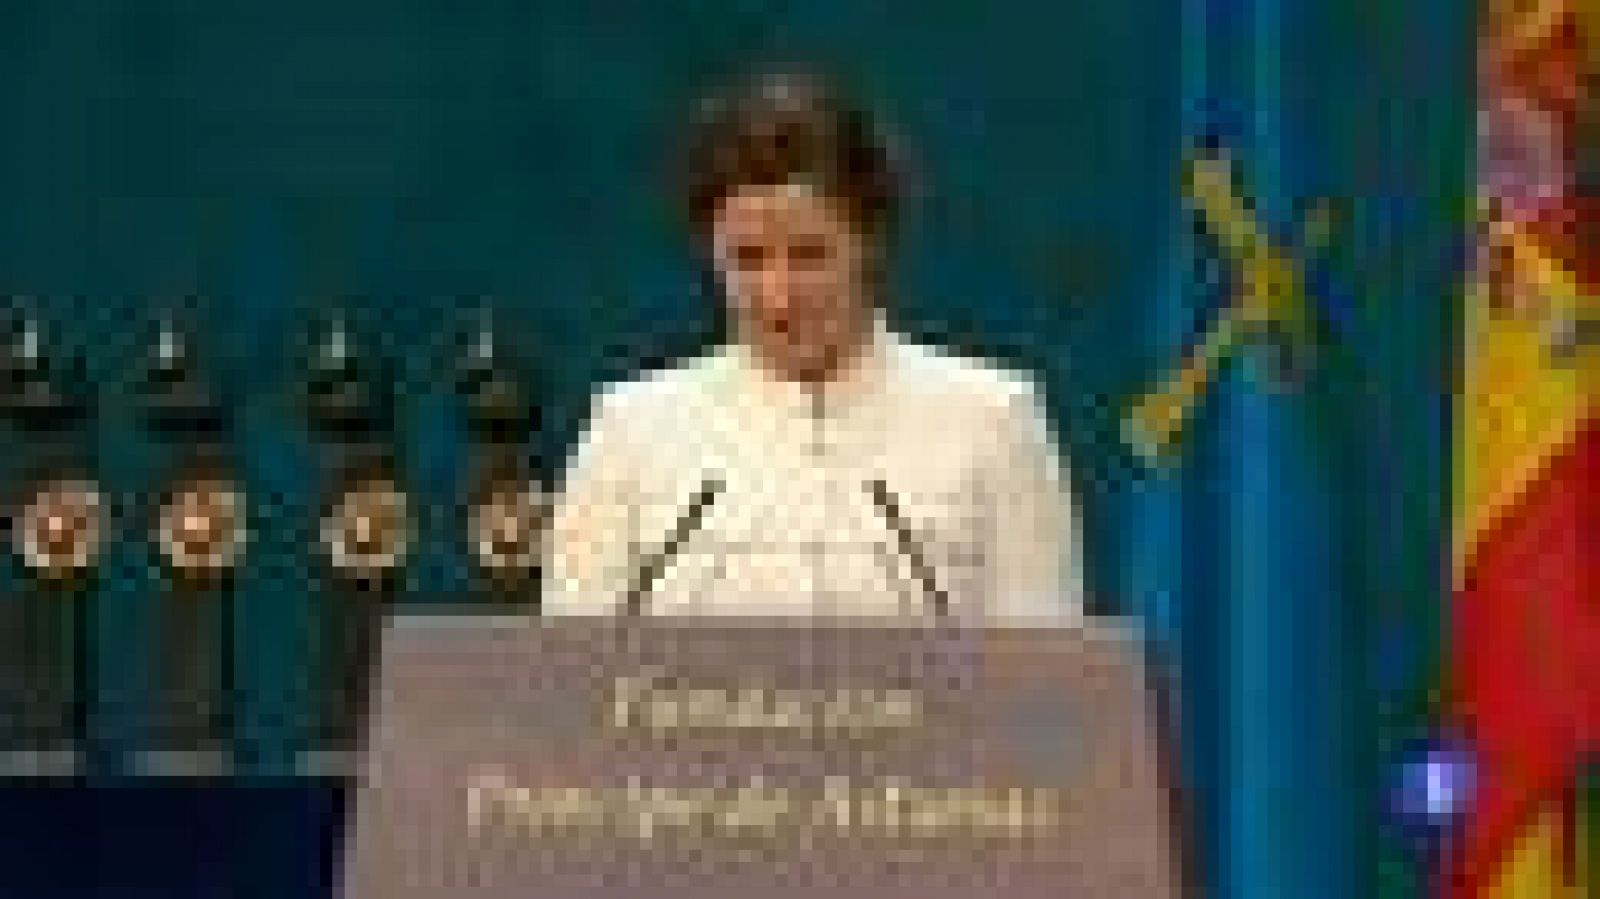 Gebrselassie, Premio Príncipe de Asturias 